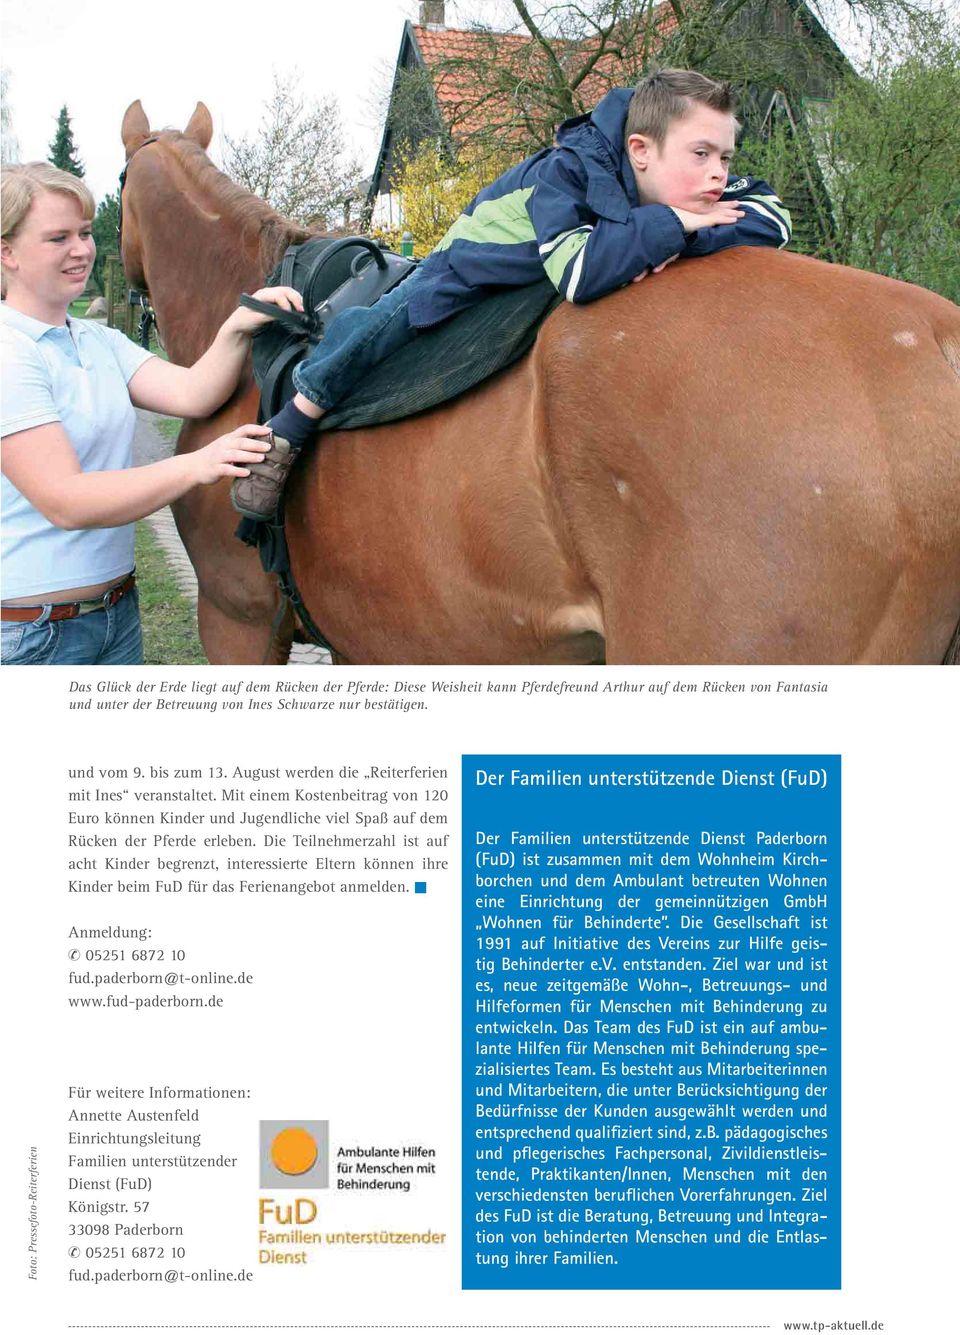 Mit einem Kostenbeitrag von 120 Euro können Kinder und Jugendliche viel Spaß auf dem Rücken der Pferde erleben.